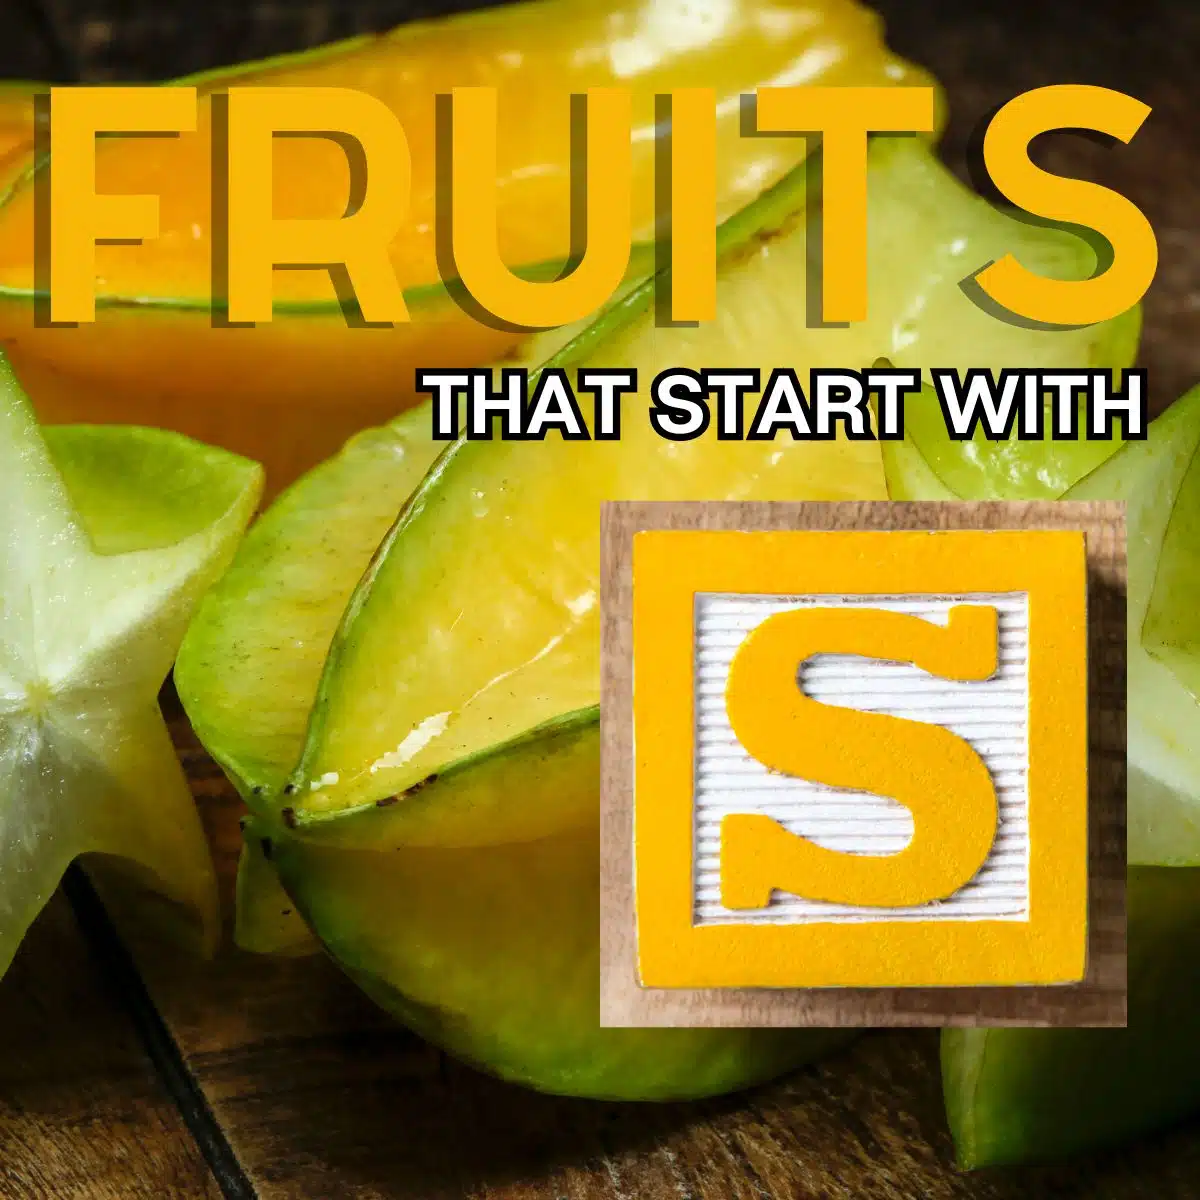 Kvadratna slika za voće koje počinje slovom S, sa zvjezdastim voćem.